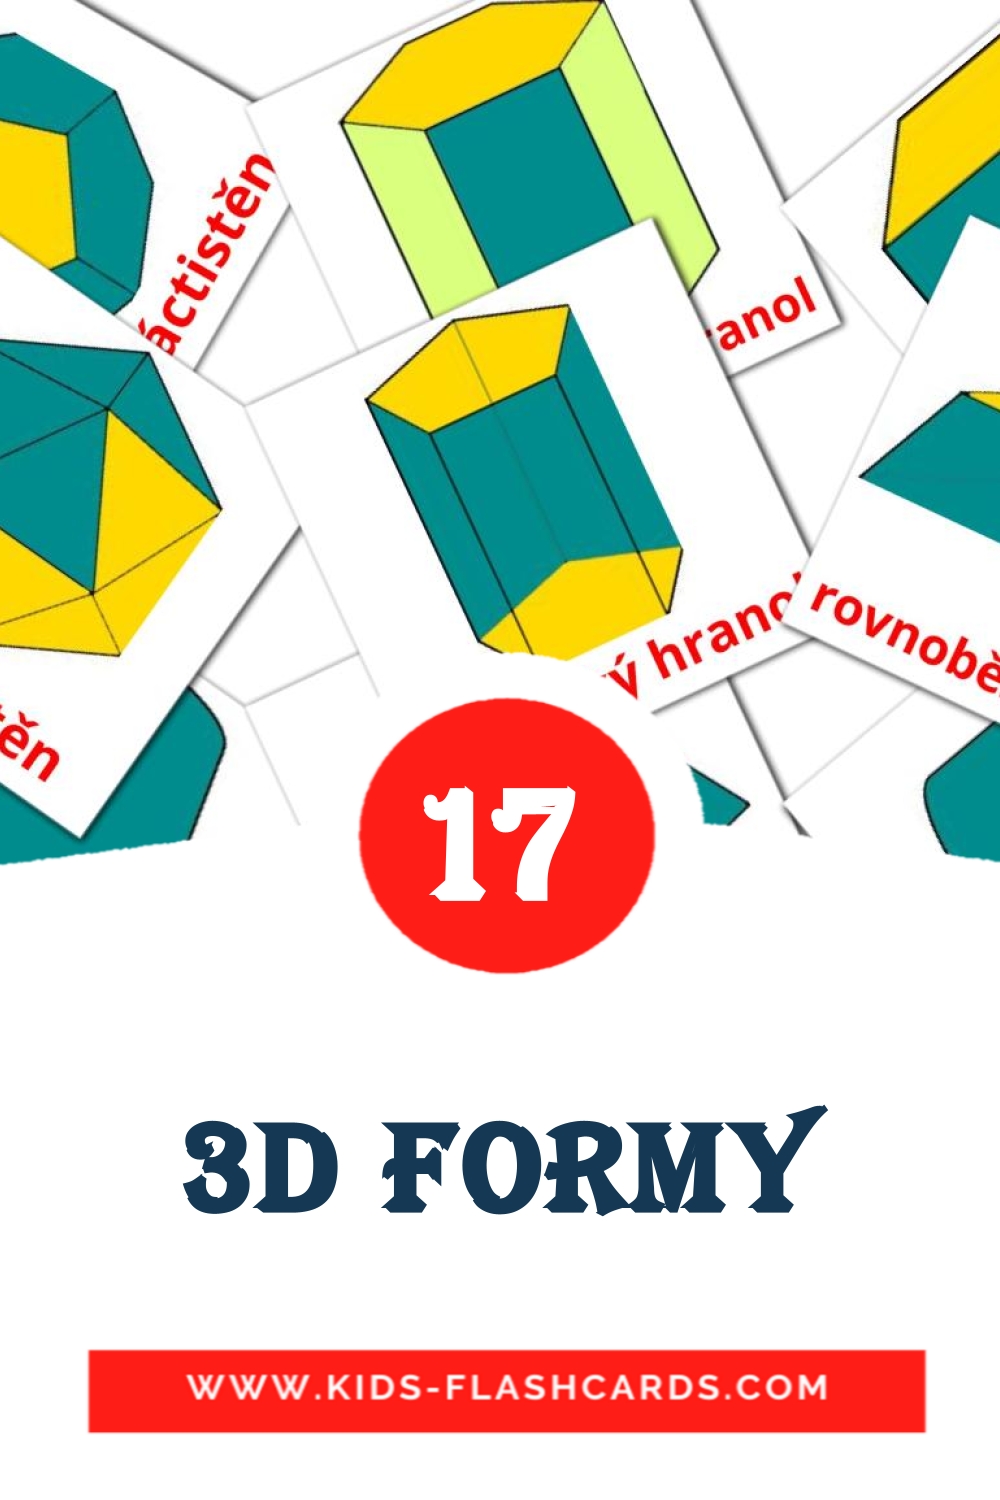 17 3D formy fotokaarten voor kleuters in het tsjechisch